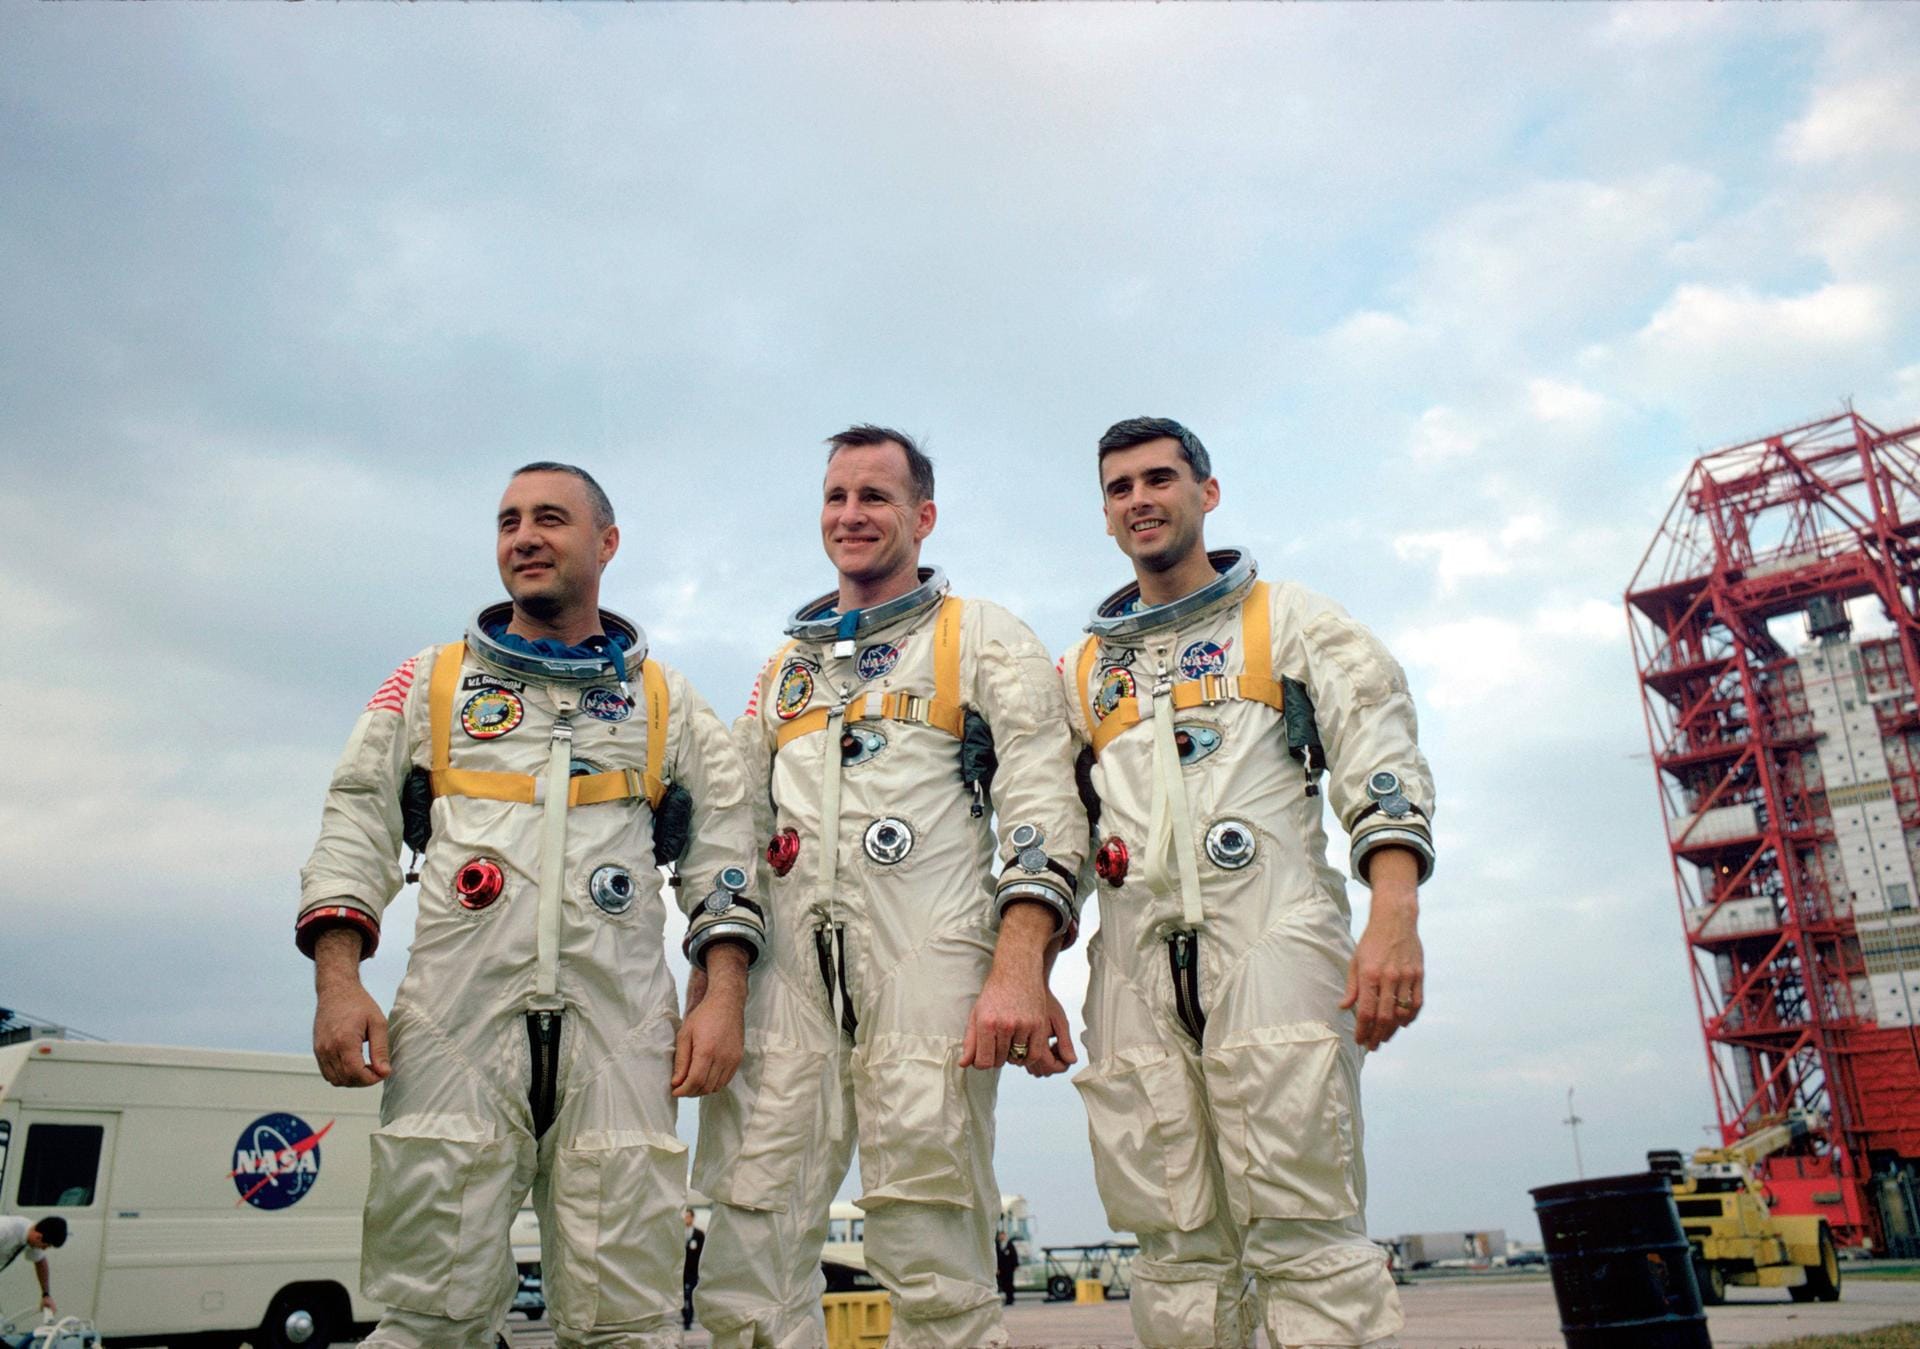 Ein Test einer Apollo-Kommandokapsel geht schief: Die Astronauten Virgil Gus Grissom, Edward White und Robert Chaffee sterben am 27. Januar 1967 bei einem Brand.